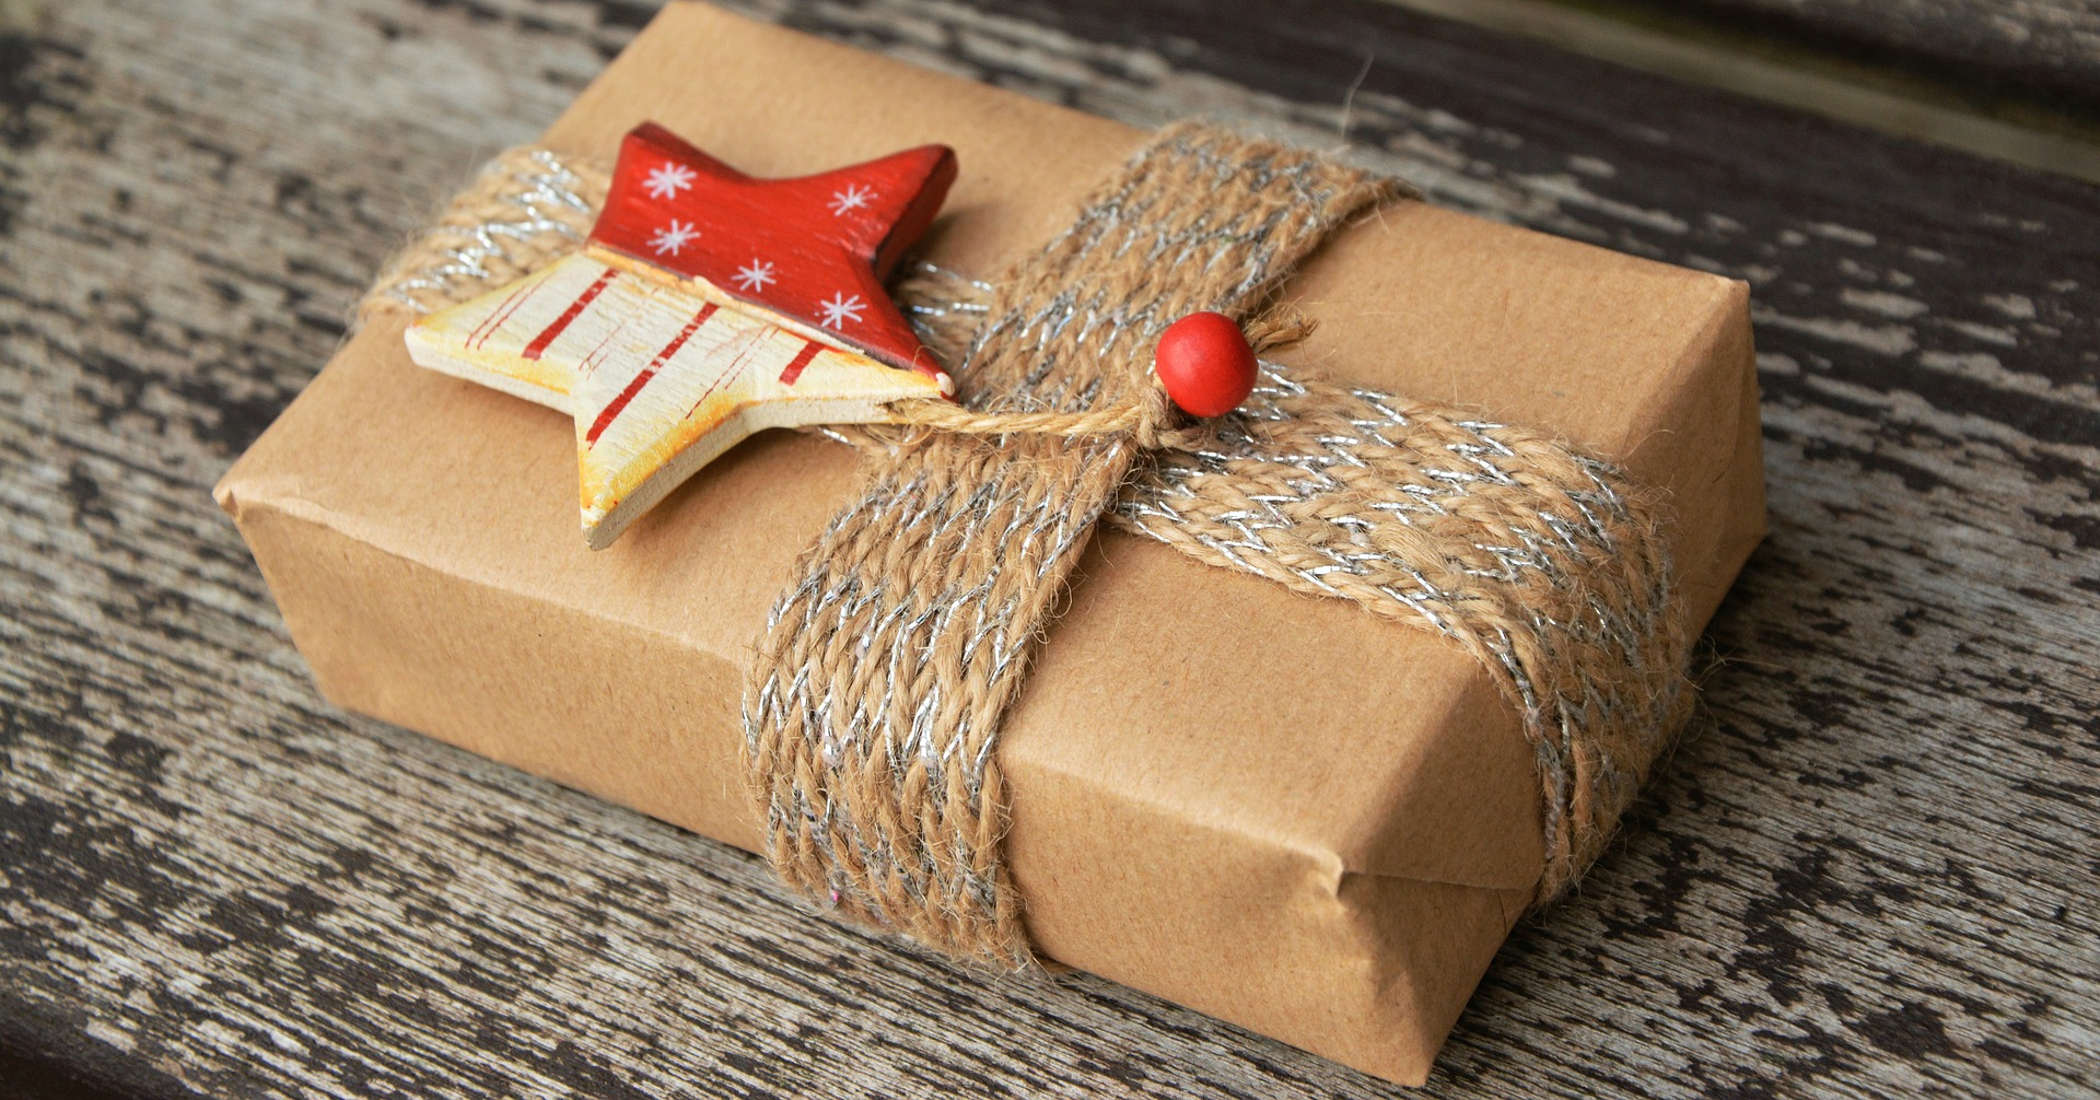 Servicios de valor: consejos y ejemplos para impulsar las ventas de Navidad